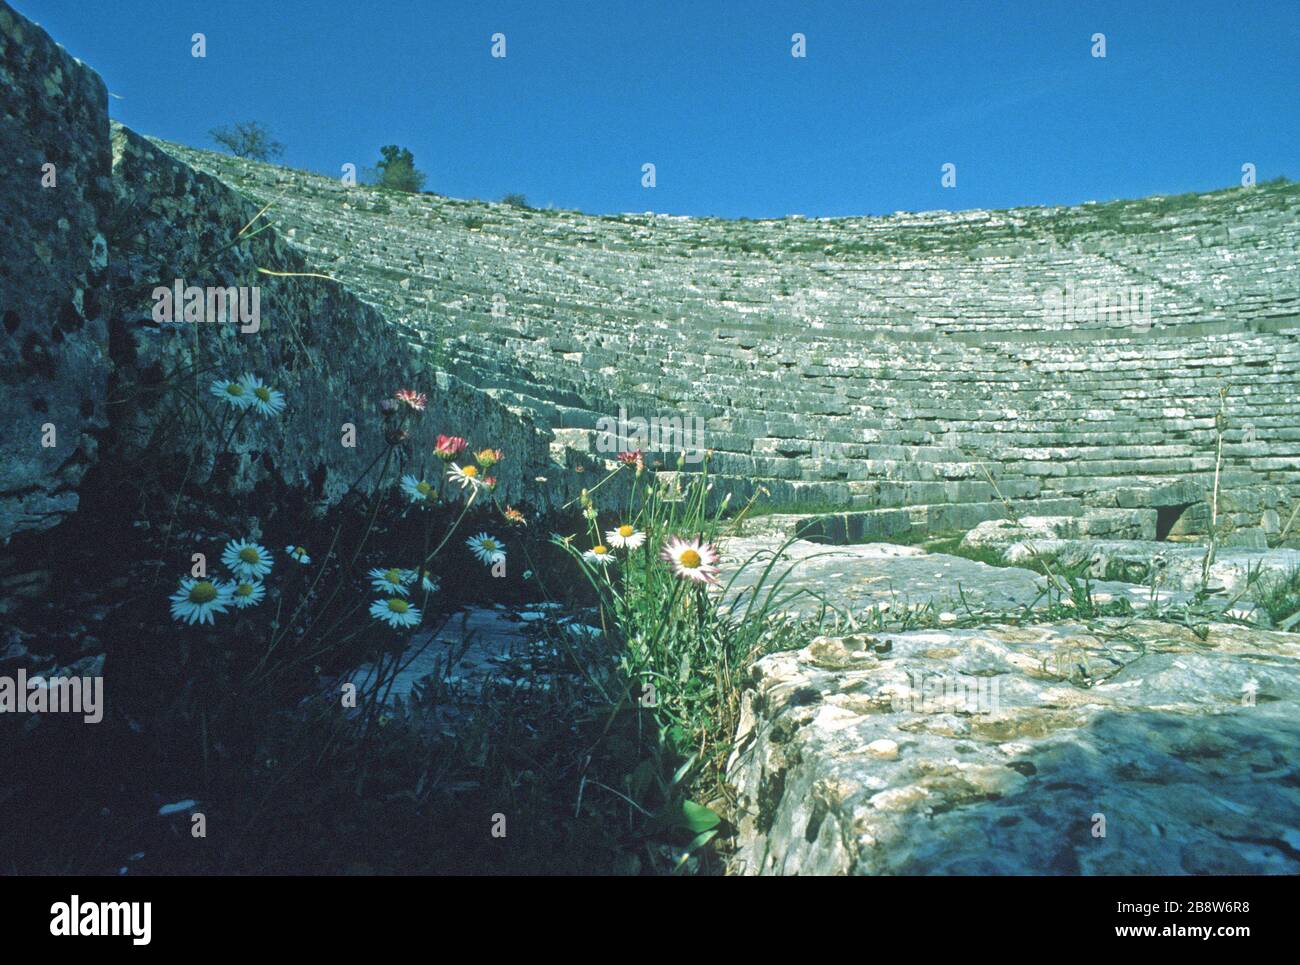 L'antico teatro greco di Dodoni, Ioannina, Epiro, Grecia, visto dal punto di vista degli artisti, mostra file curve di sedili in pietra che guardano verso il basso sul palco e scalano fino ad ogni livello. Cielo blu sullo sfondo. Dodoni è uno dei 15 teatri dell'antica Grecia, con lo status di patrimonio dell'umanità dell'UNESCO. Foto Stock